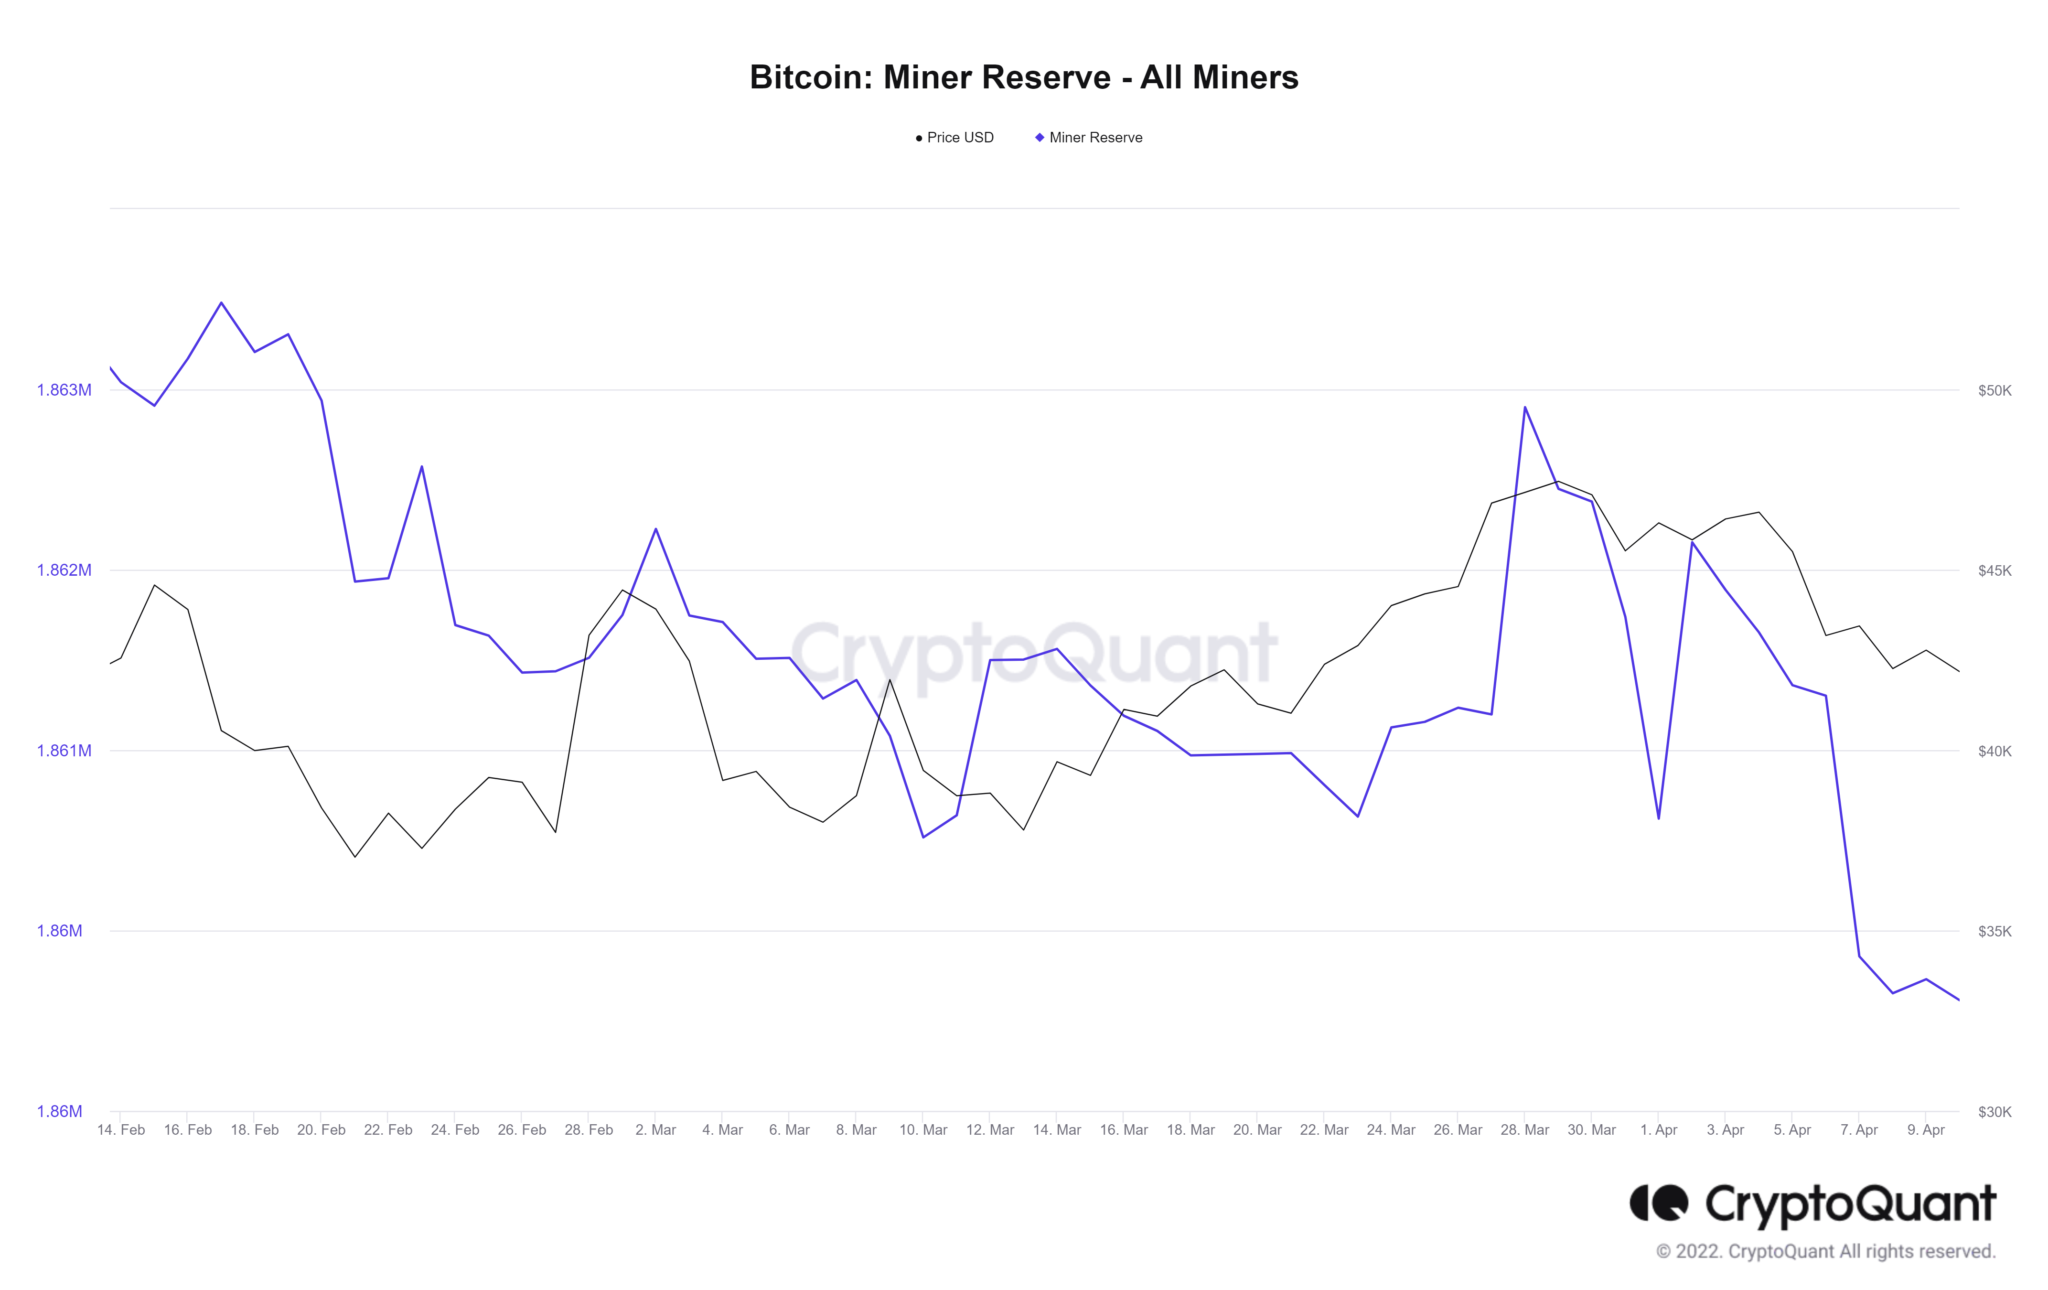 Reservas de Bitcoin de los mineros al 11 de abril de 2022. Fuente: CryptoQuant